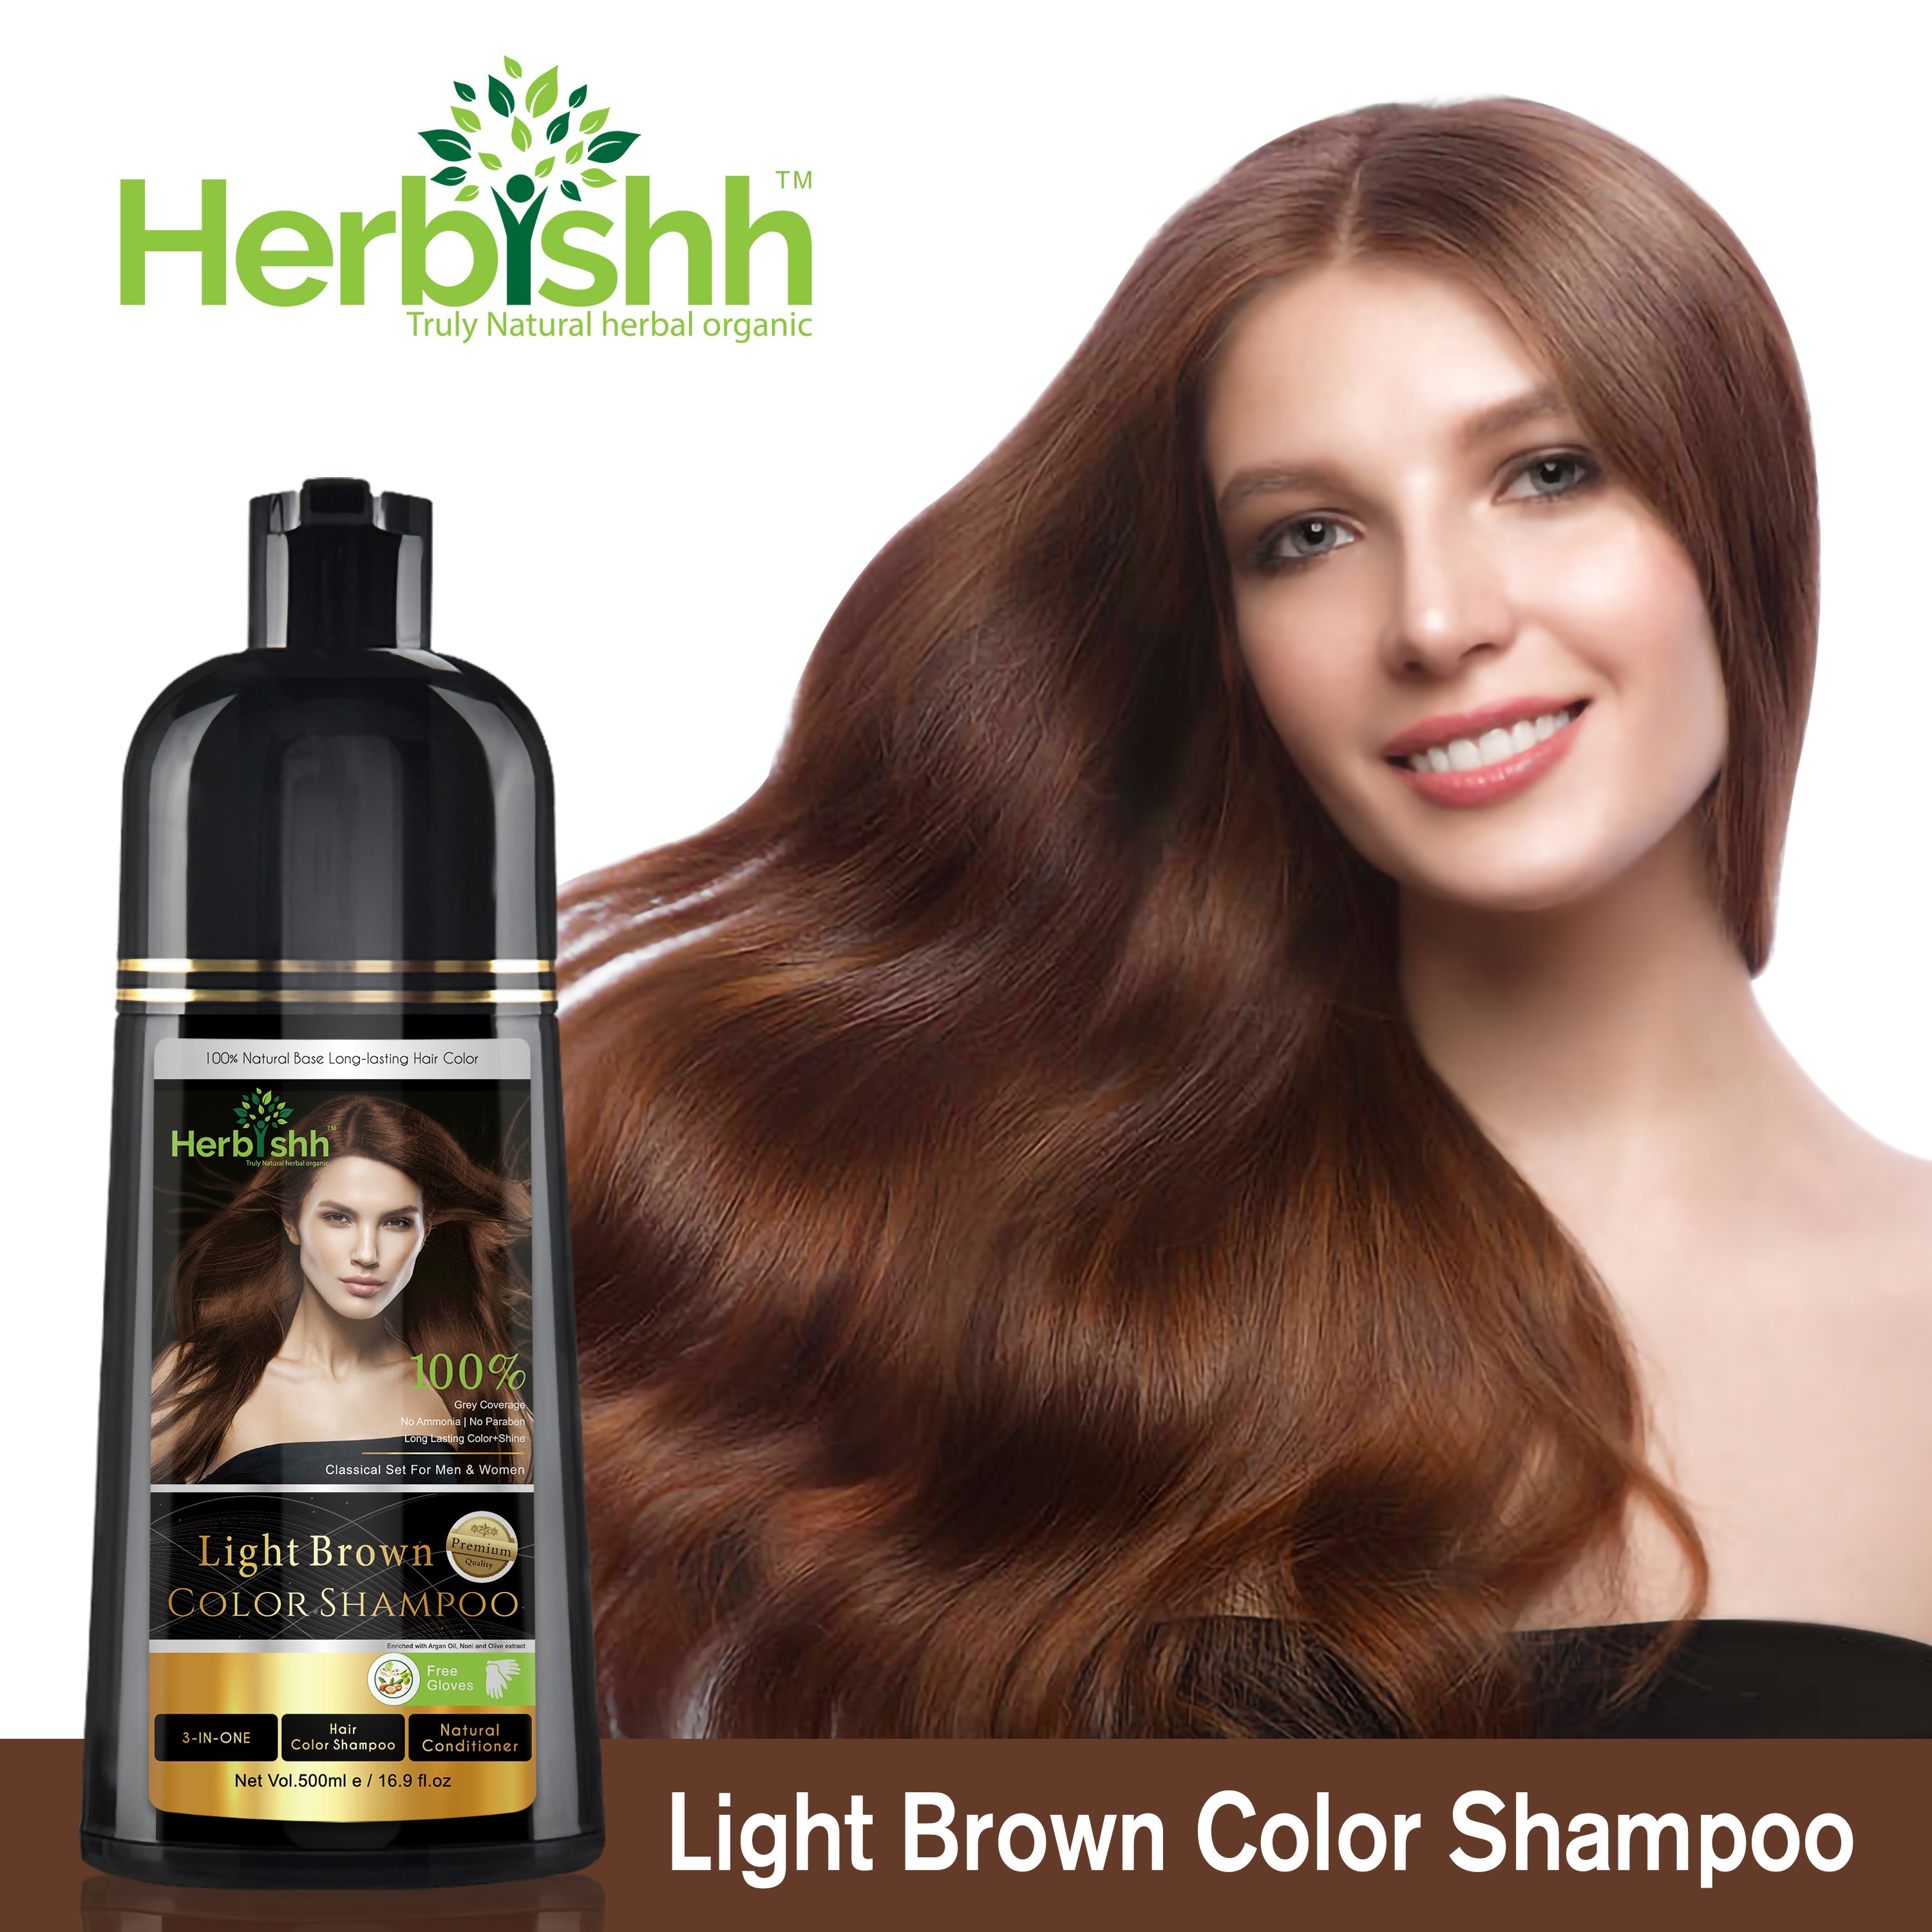 Shampoing colorant : Achat de shampoing colorant pour cheveux en ligne